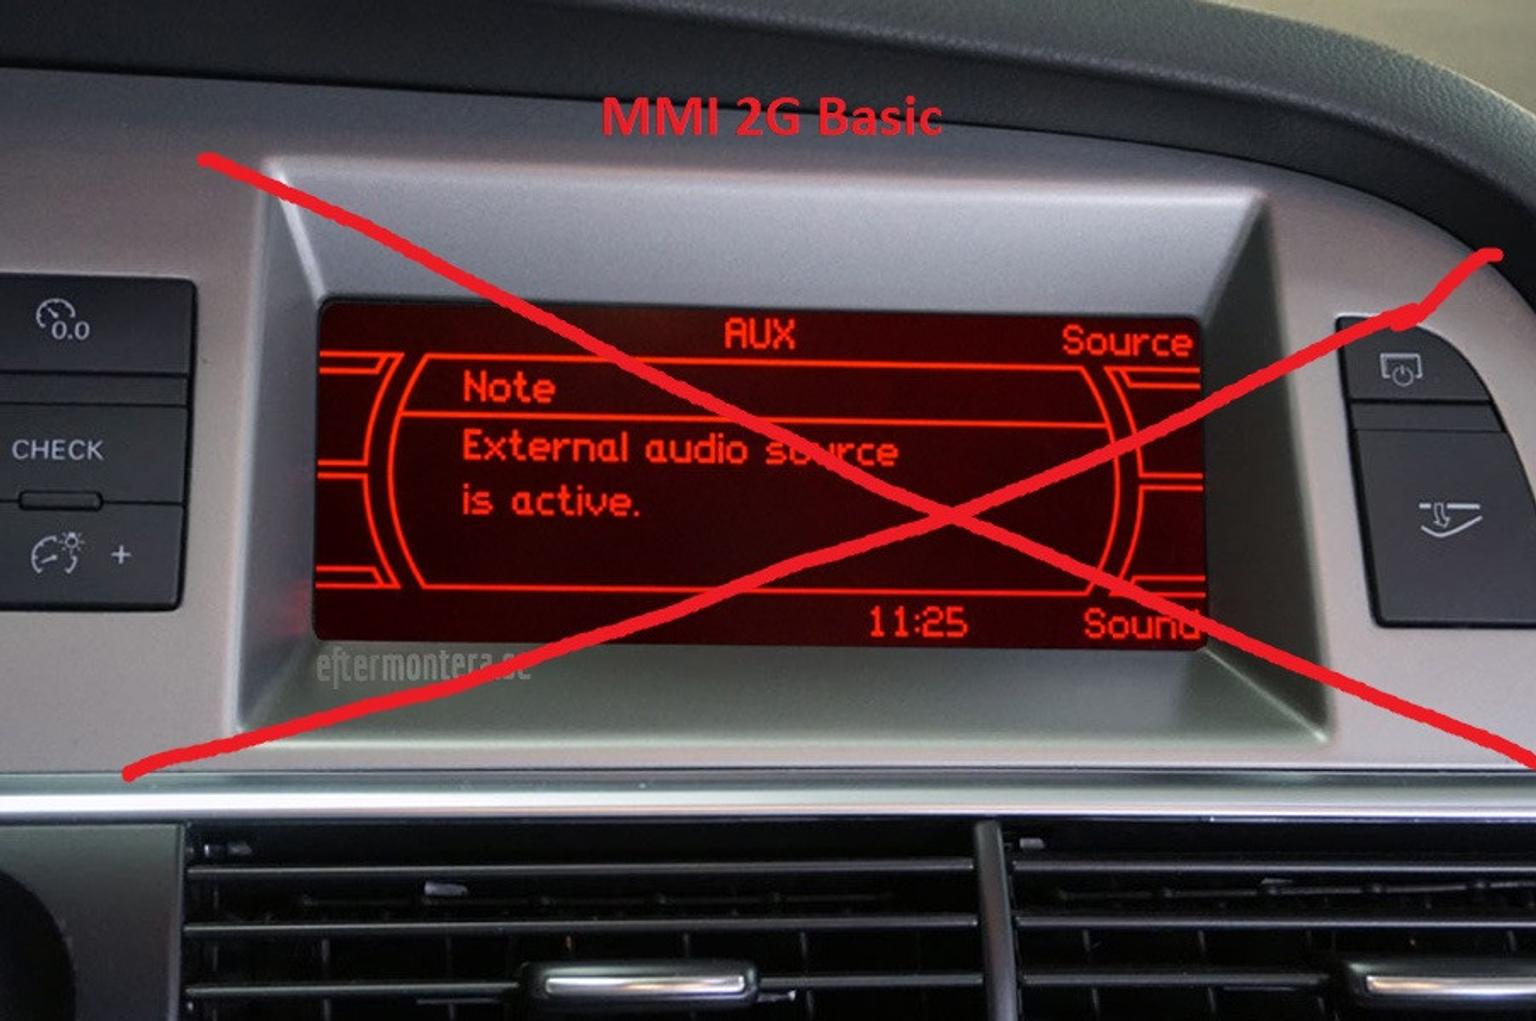 Audi aux активация монохромный дисплей